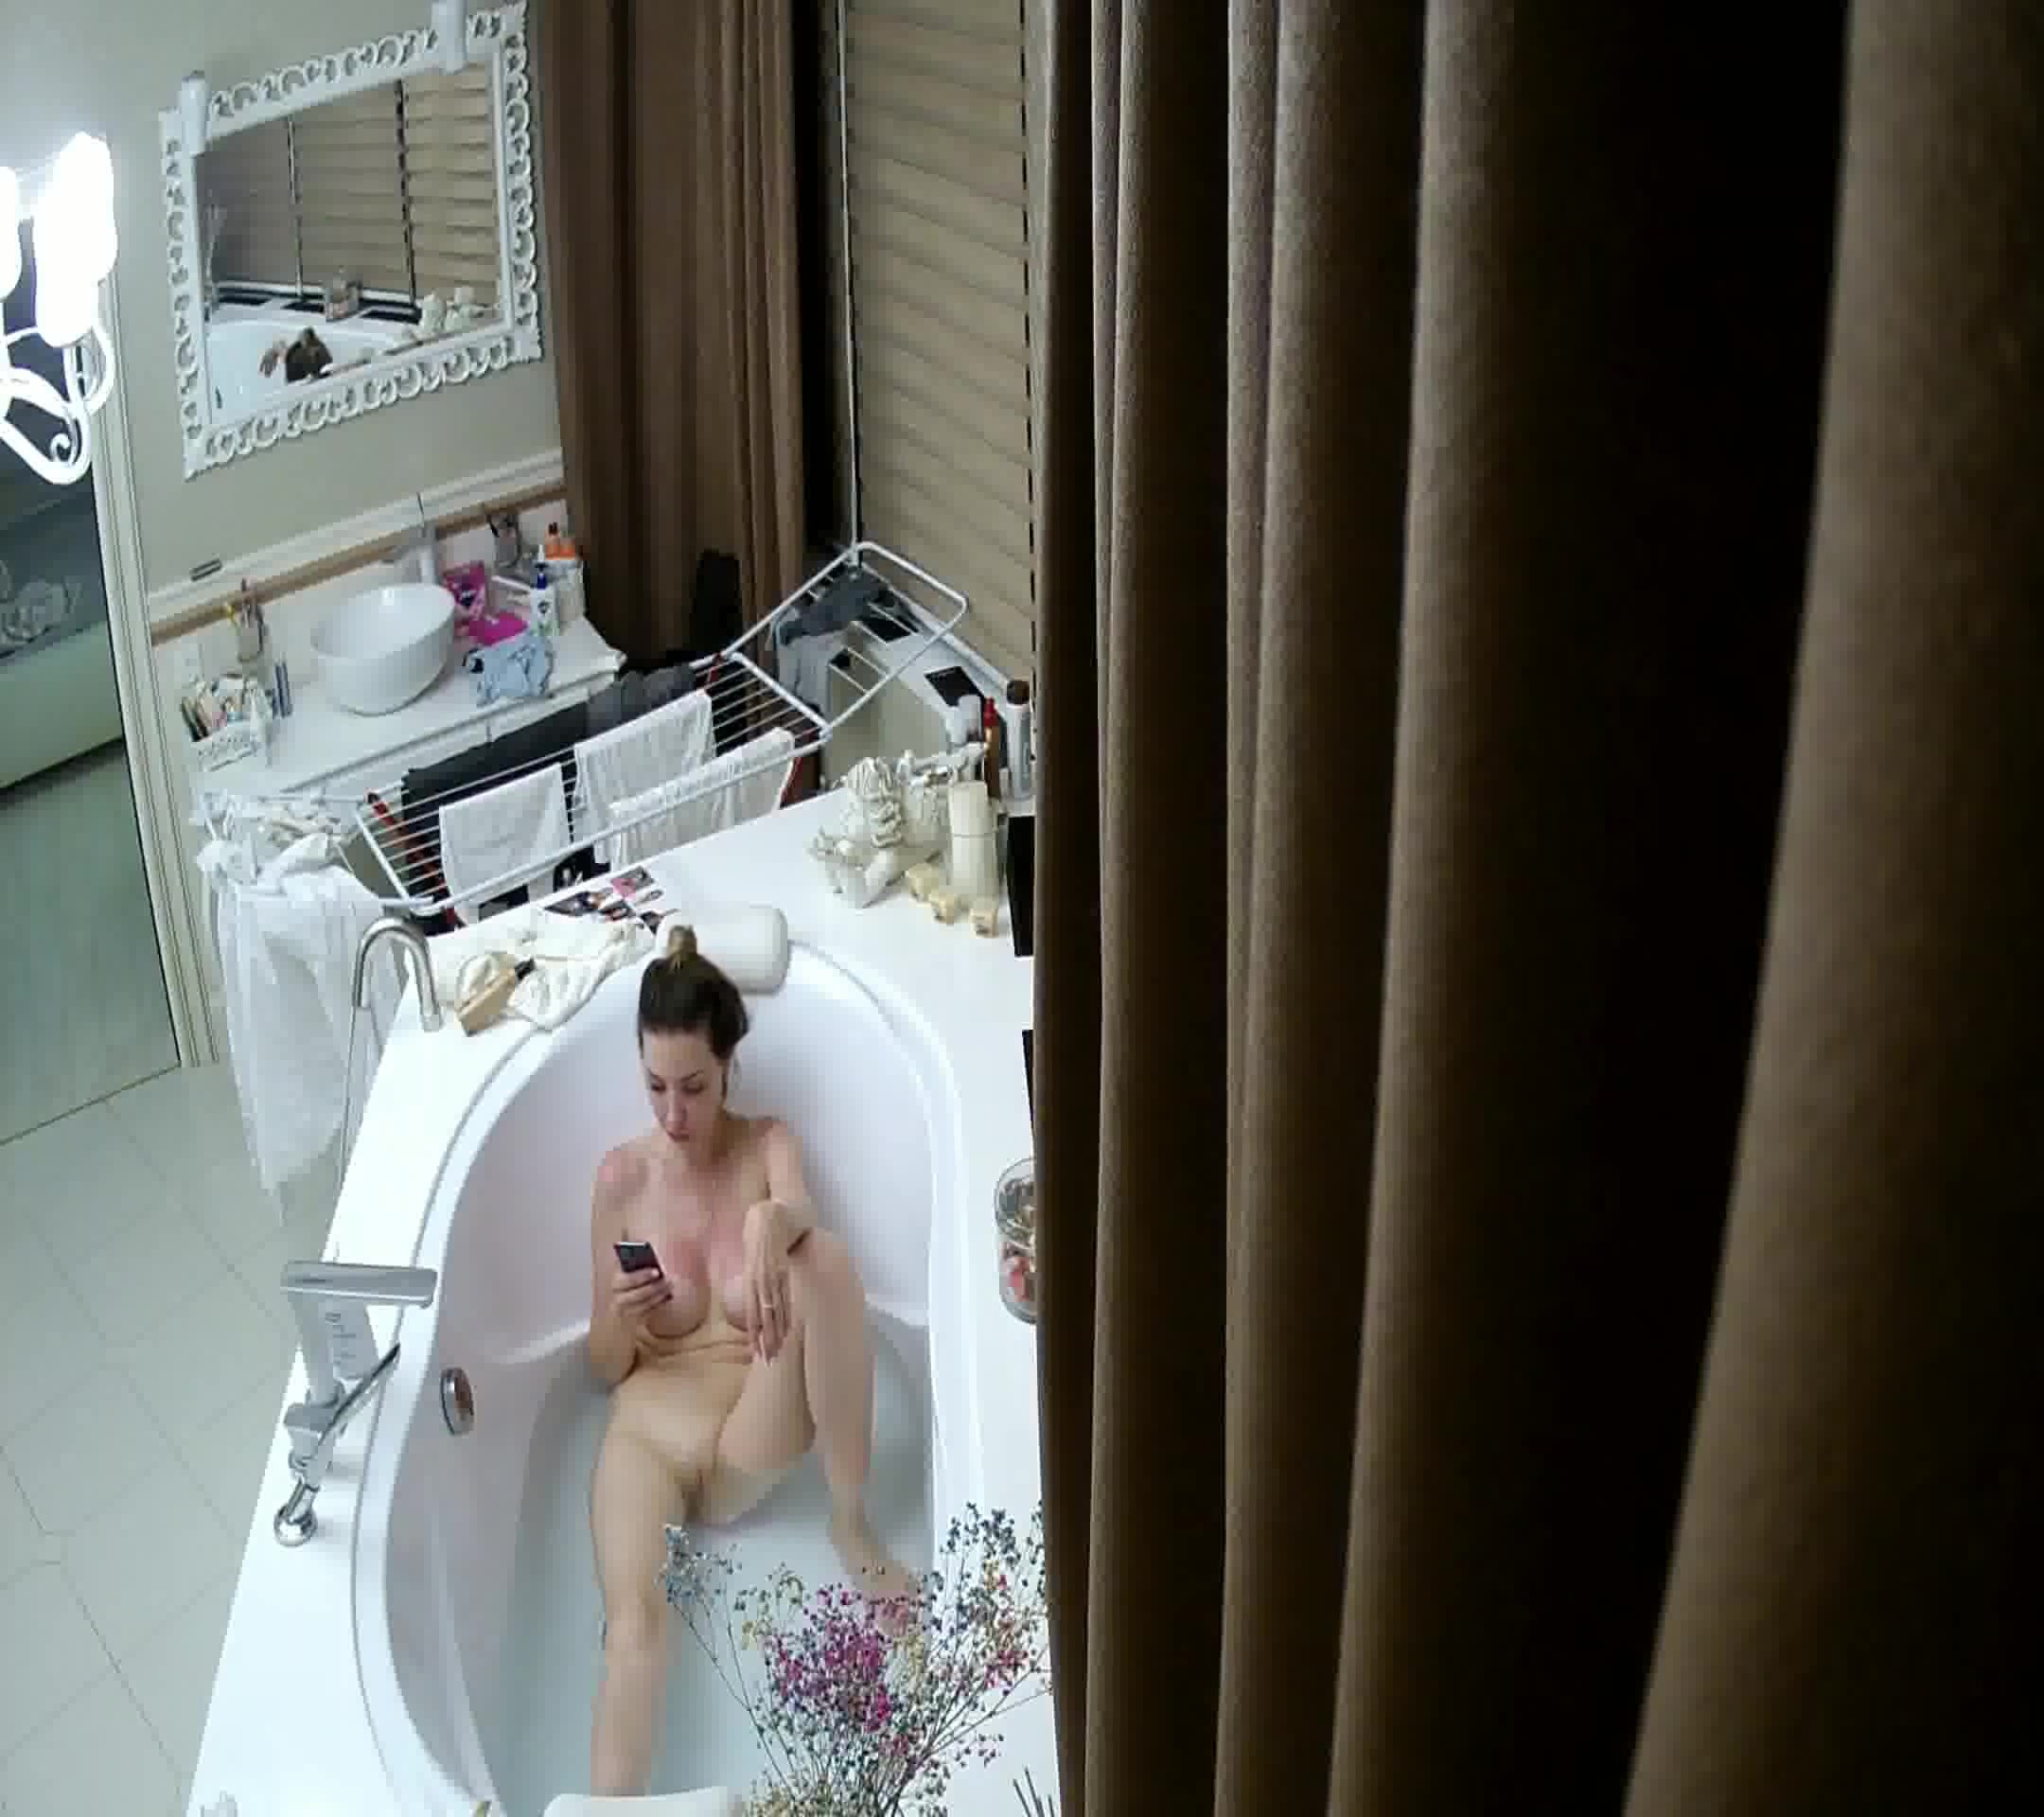 Hot girl taking a bath on hidden camera 1